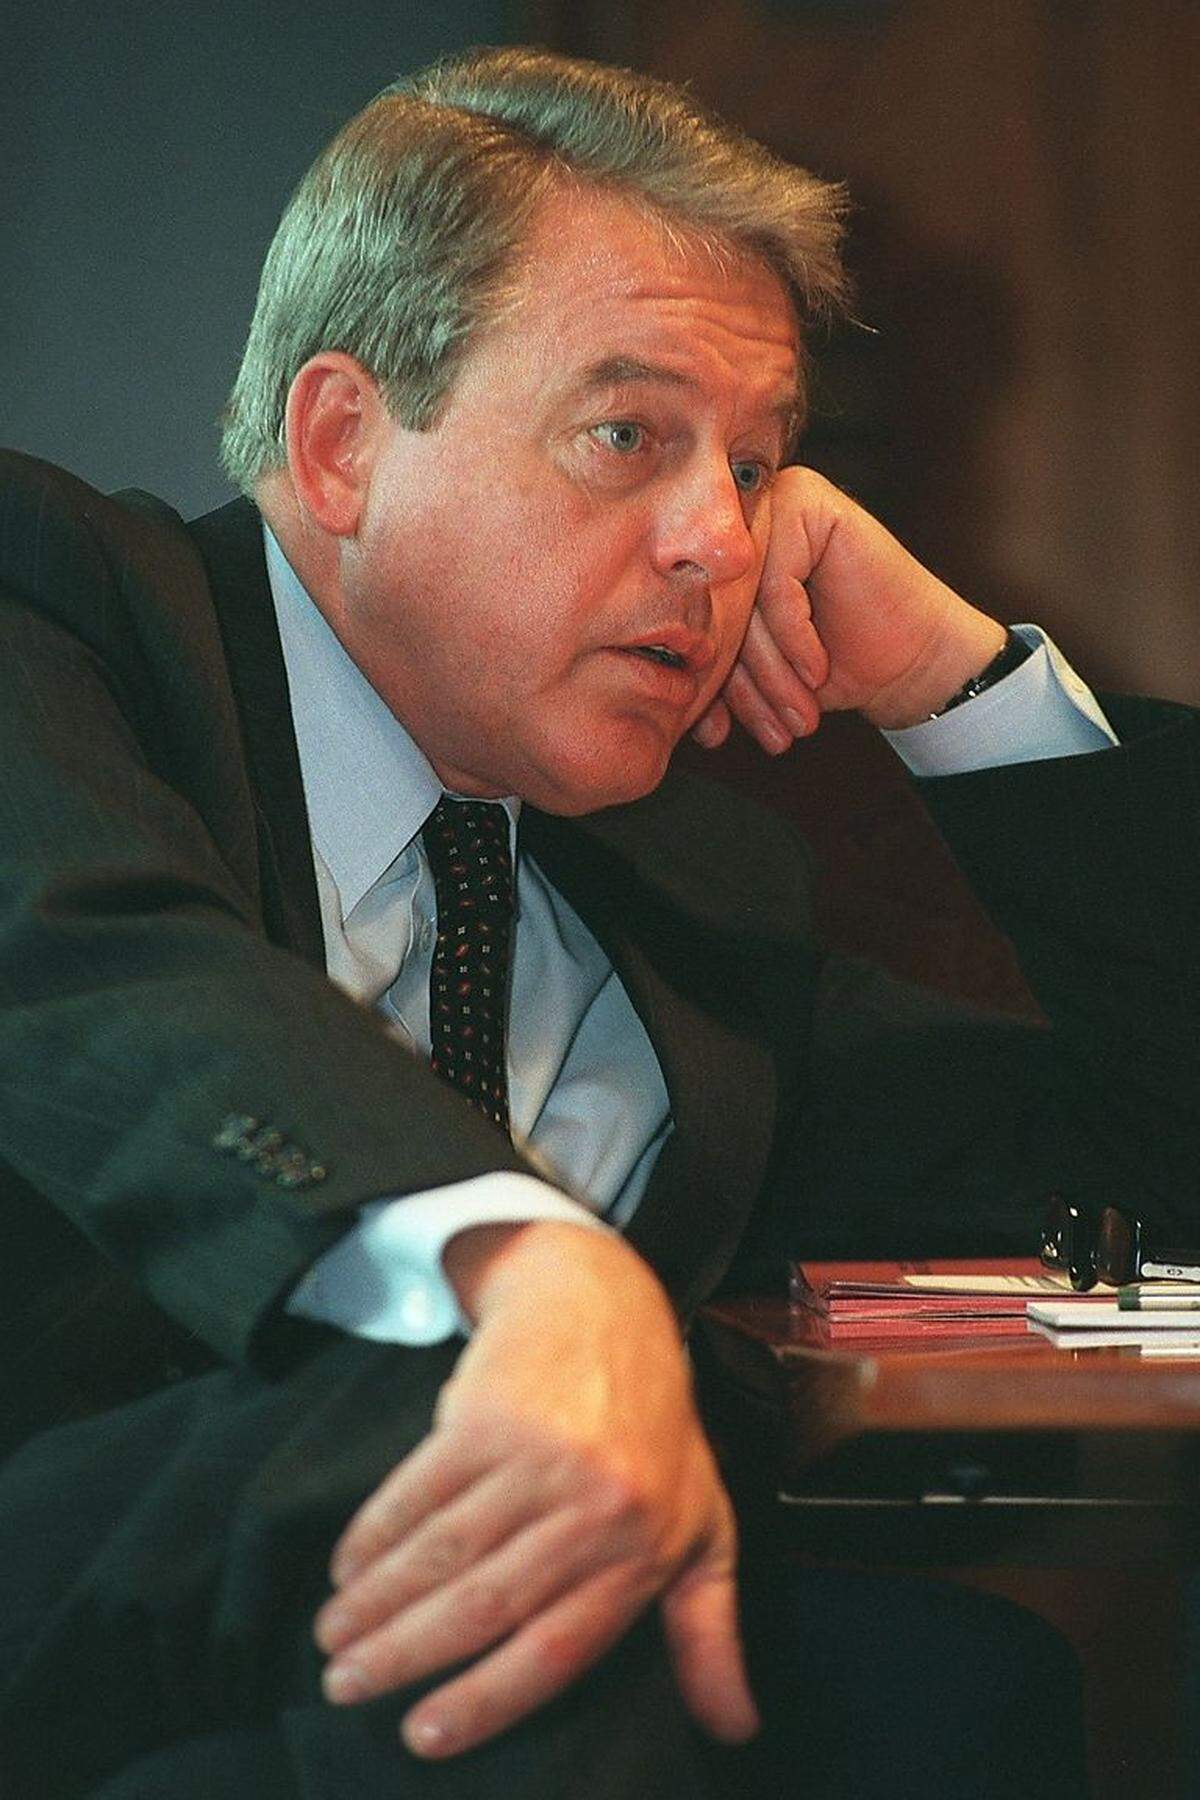 Nachdem Jörg Haider die Macht in der FPÖ übernommen hatte, beendete Vranitzky die Koalition mit den Freiheitlichen. Danach bildete er vier mehr oder weniger erfolgreiche Koalitionen mit der ÖVP, ehe er im 1996 als Kanzler und Parteichef zurücktrat.